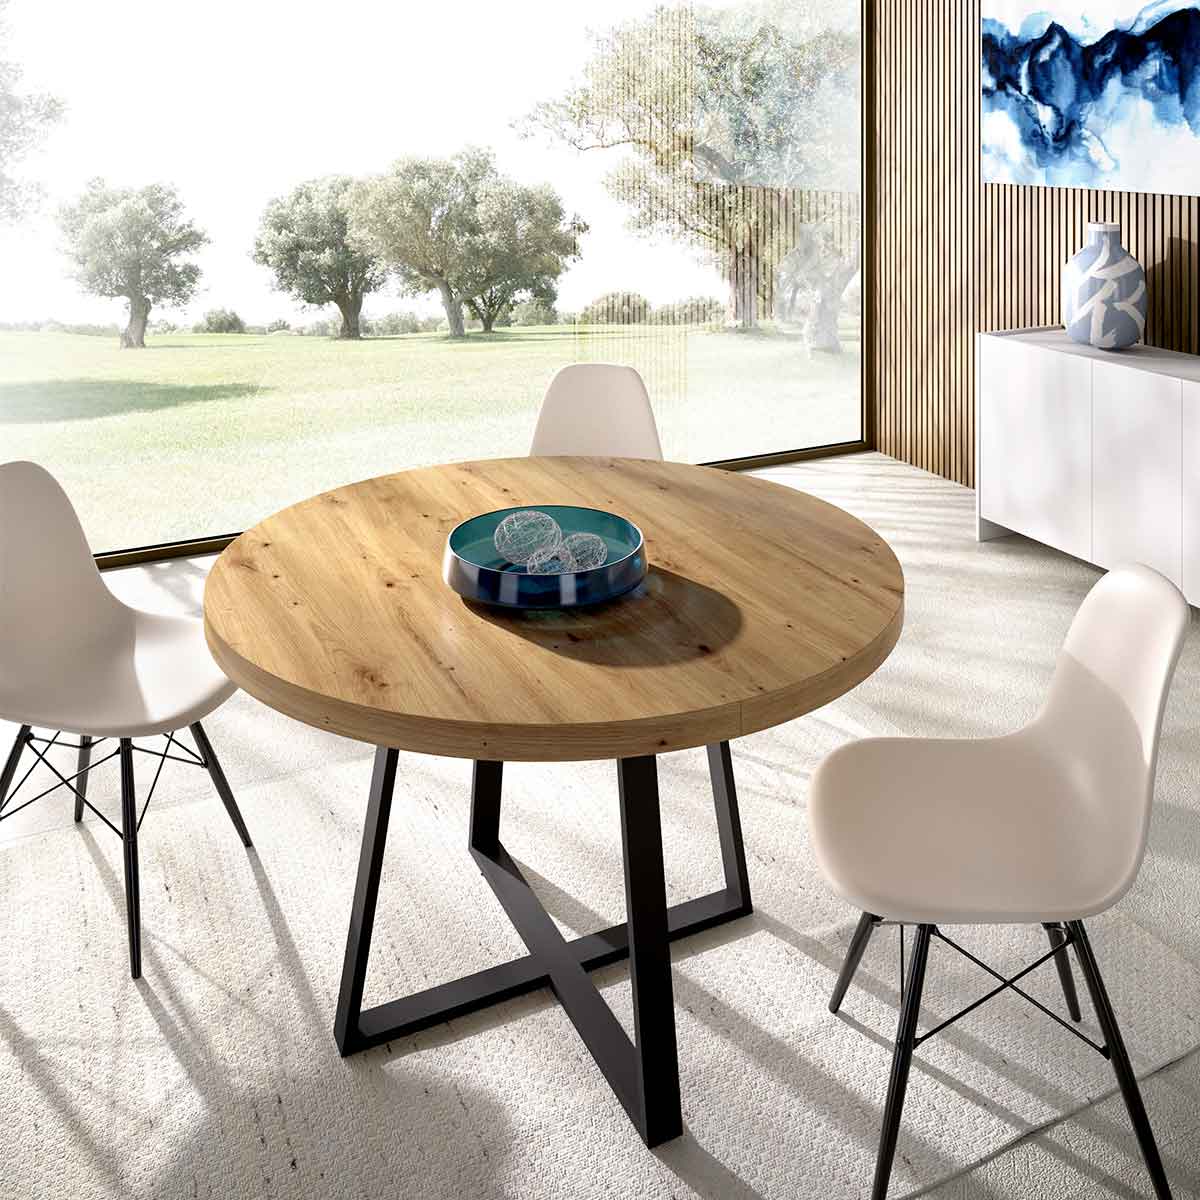 Mesa de cocina con 4 sillas, color negro y sobre de la mesa cristal blanco,  barata y funcional.